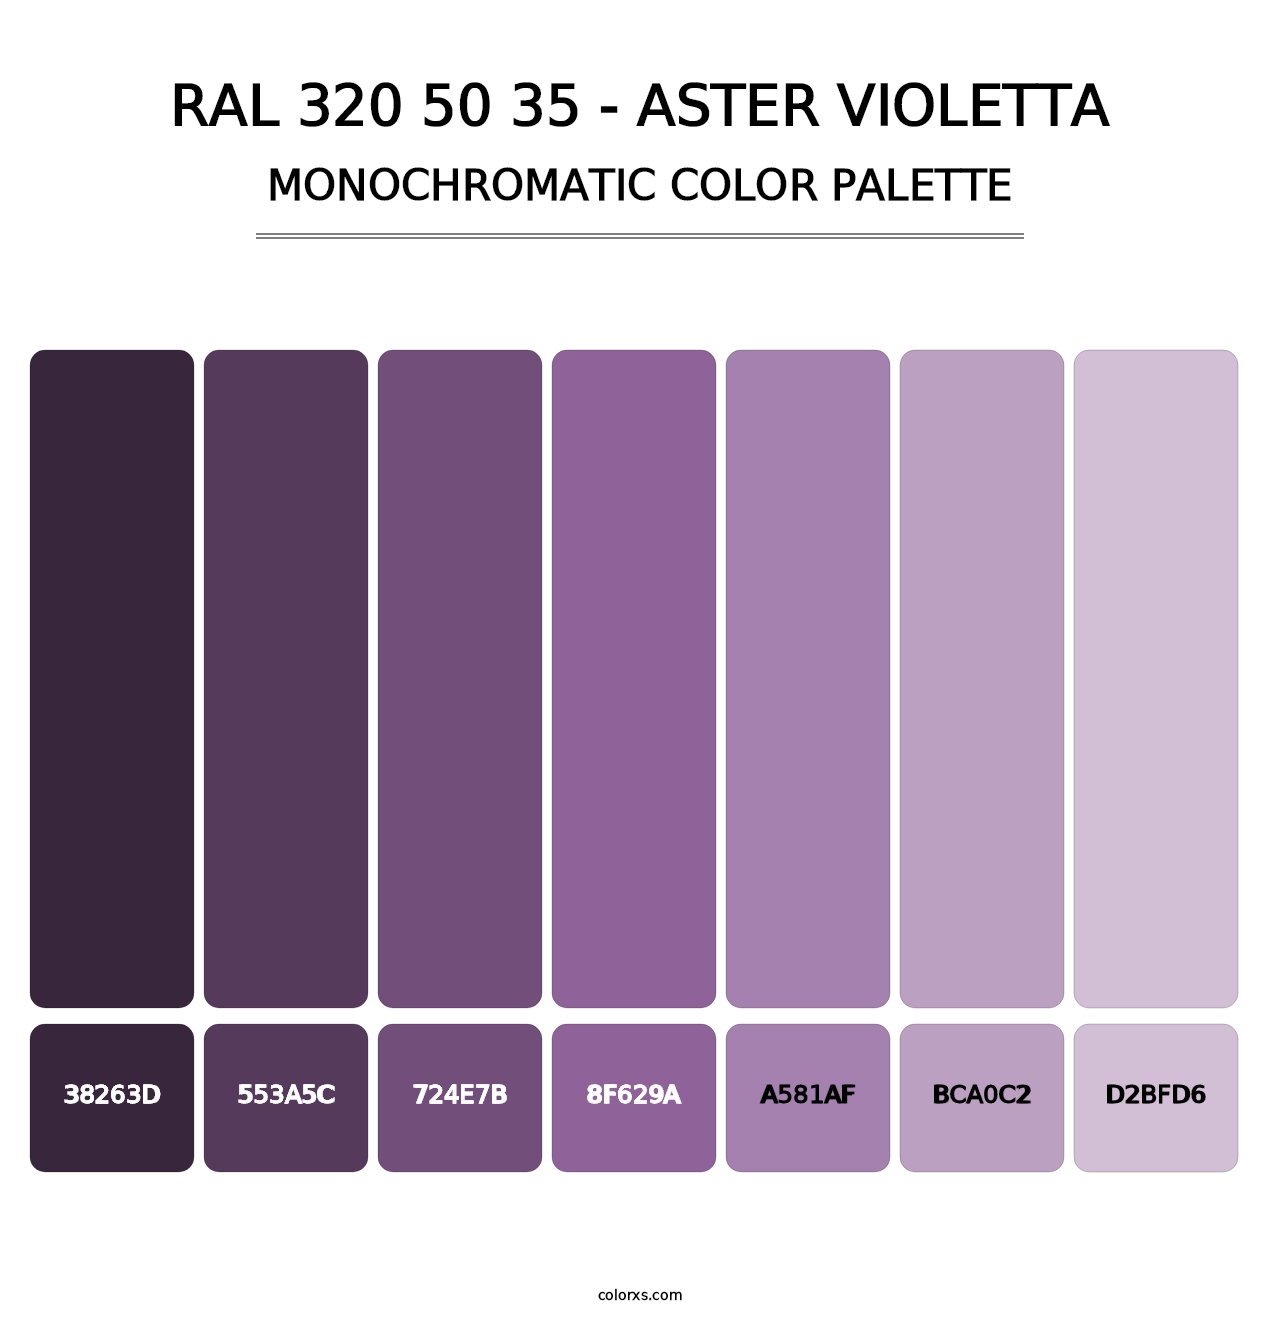 RAL 320 50 35 - Aster Violetta - Monochromatic Color Palette